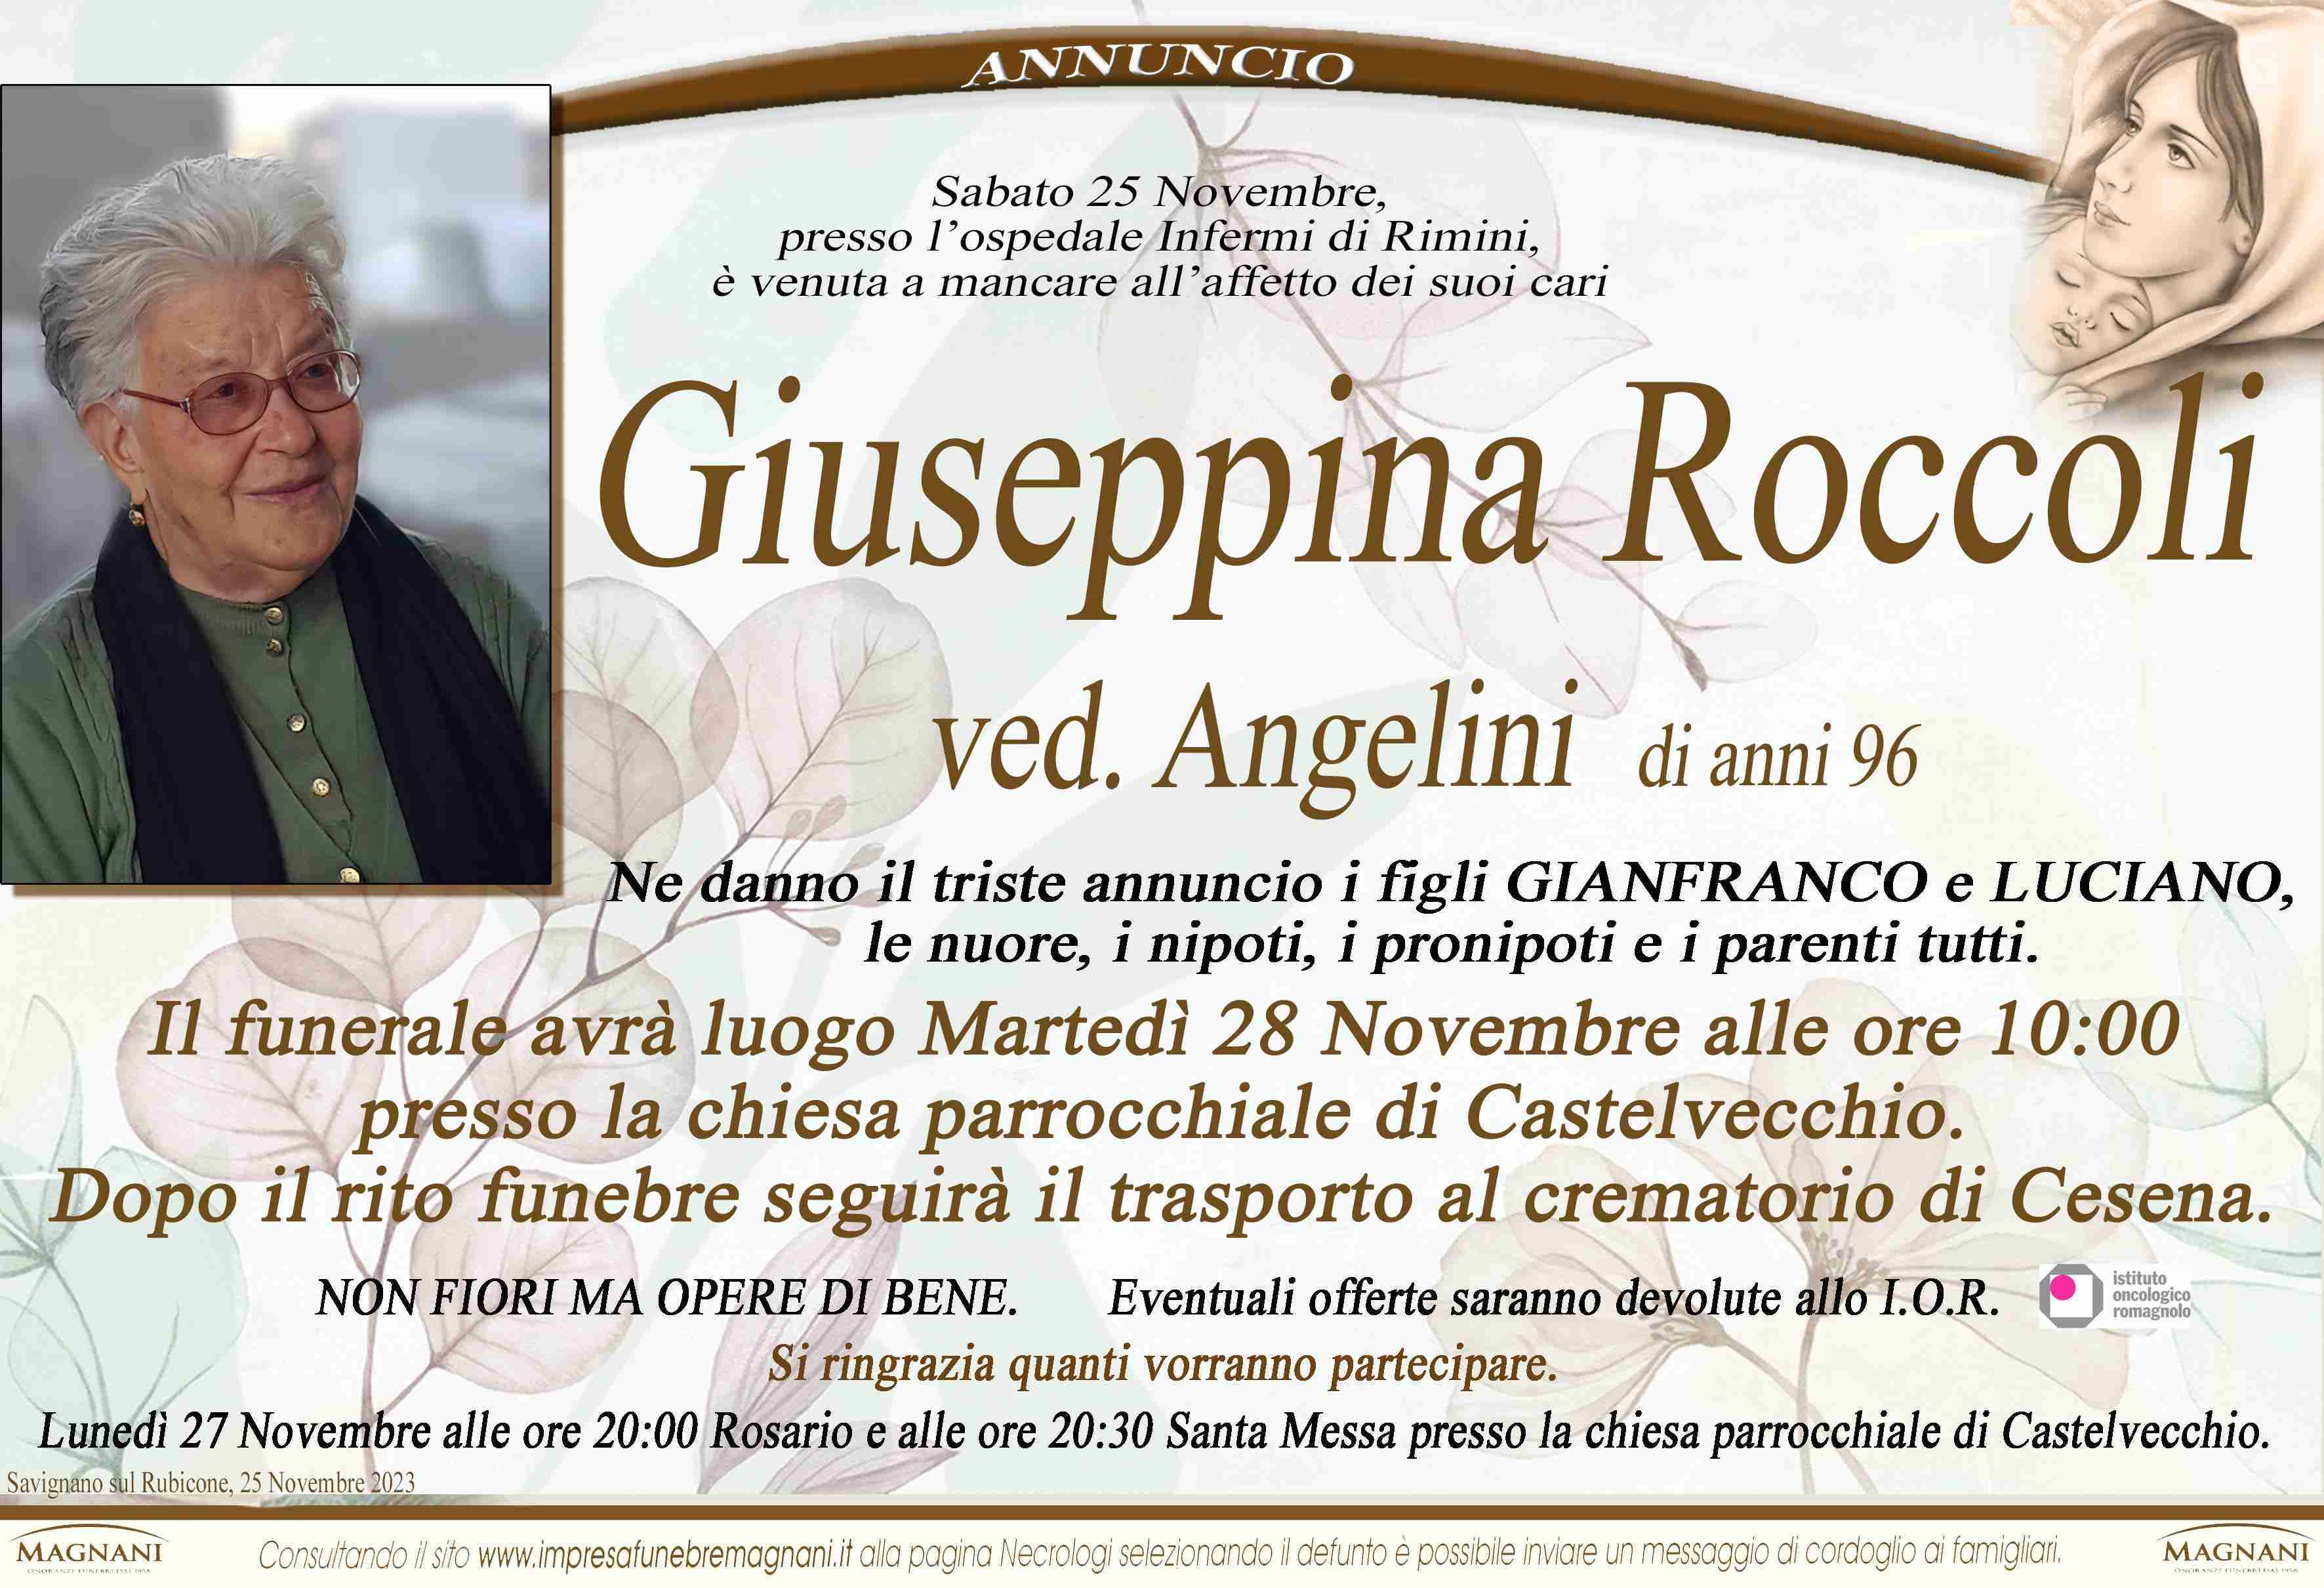 Giuseppina Roccoli